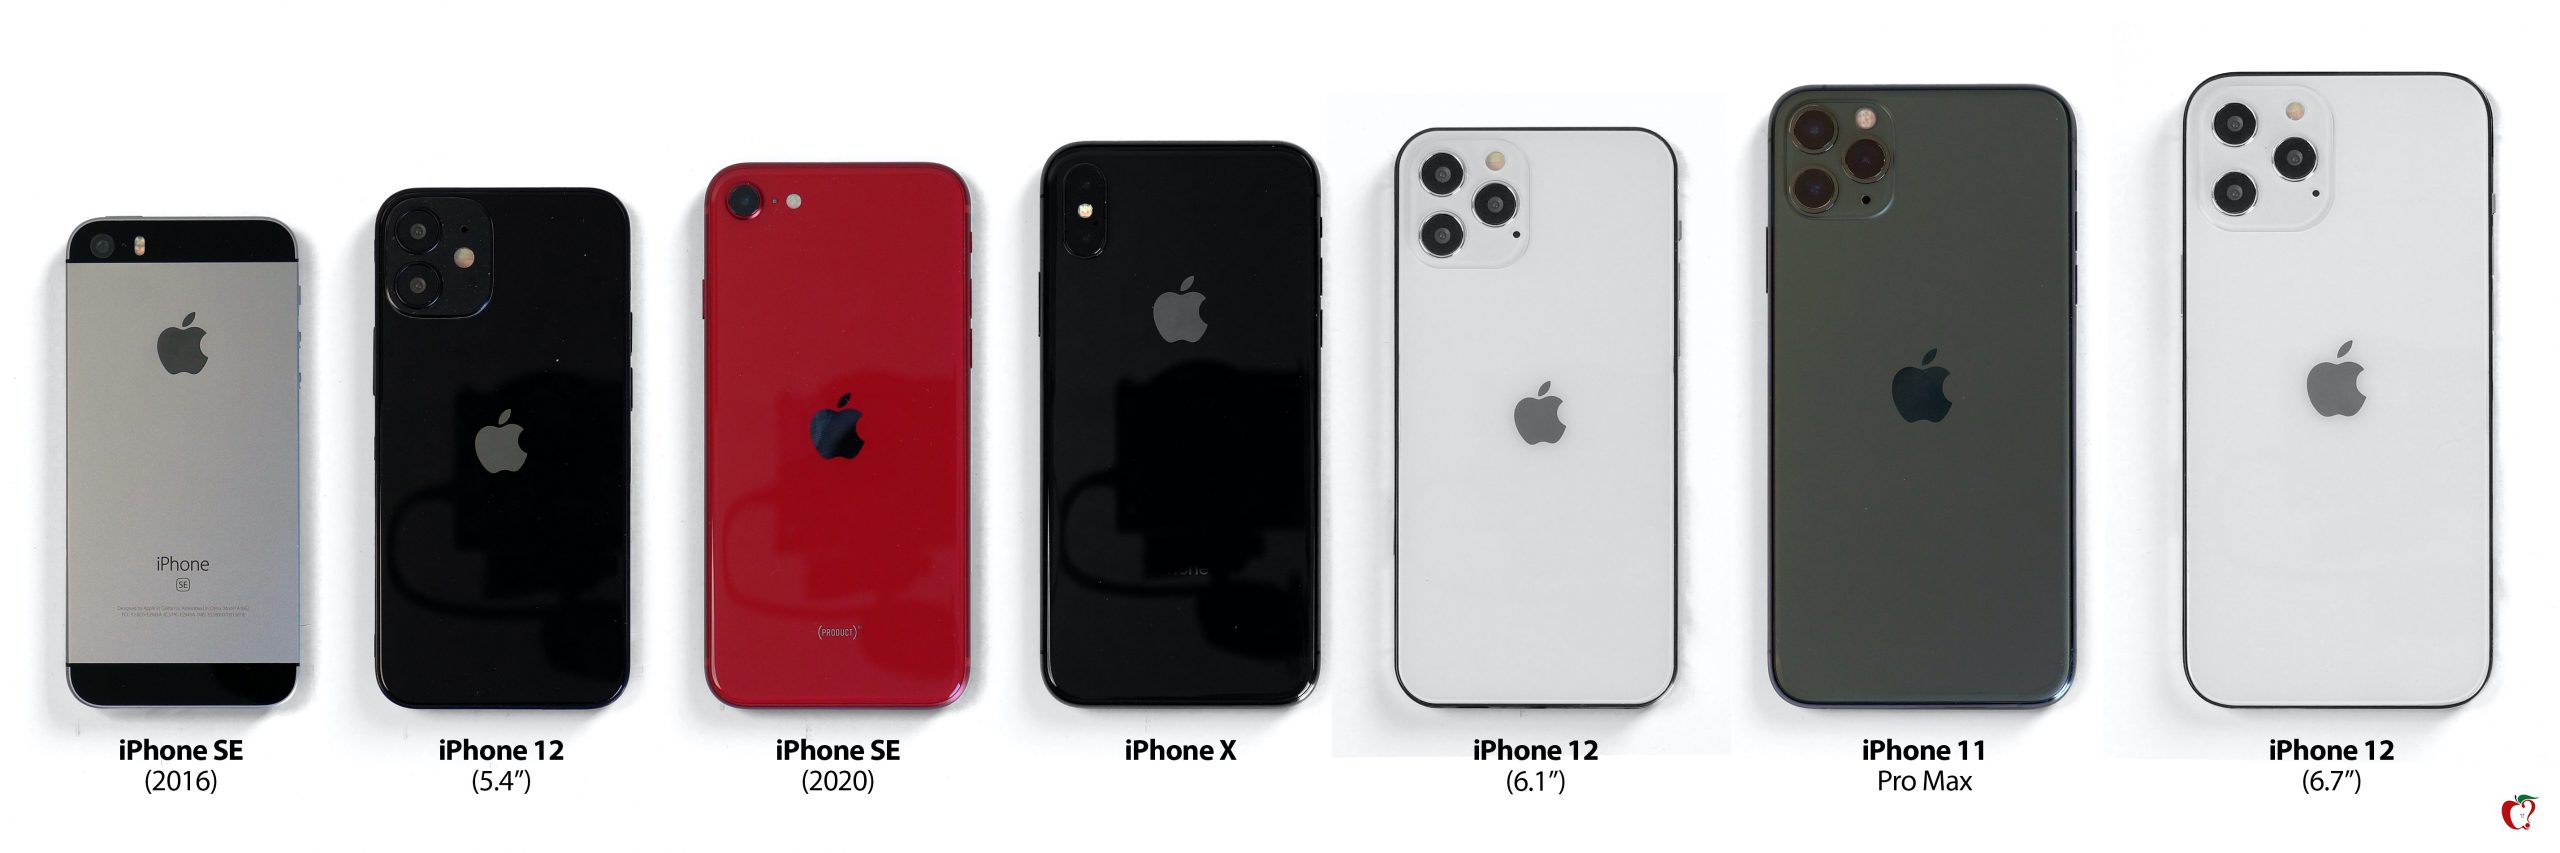 iPhone 12 size comparison